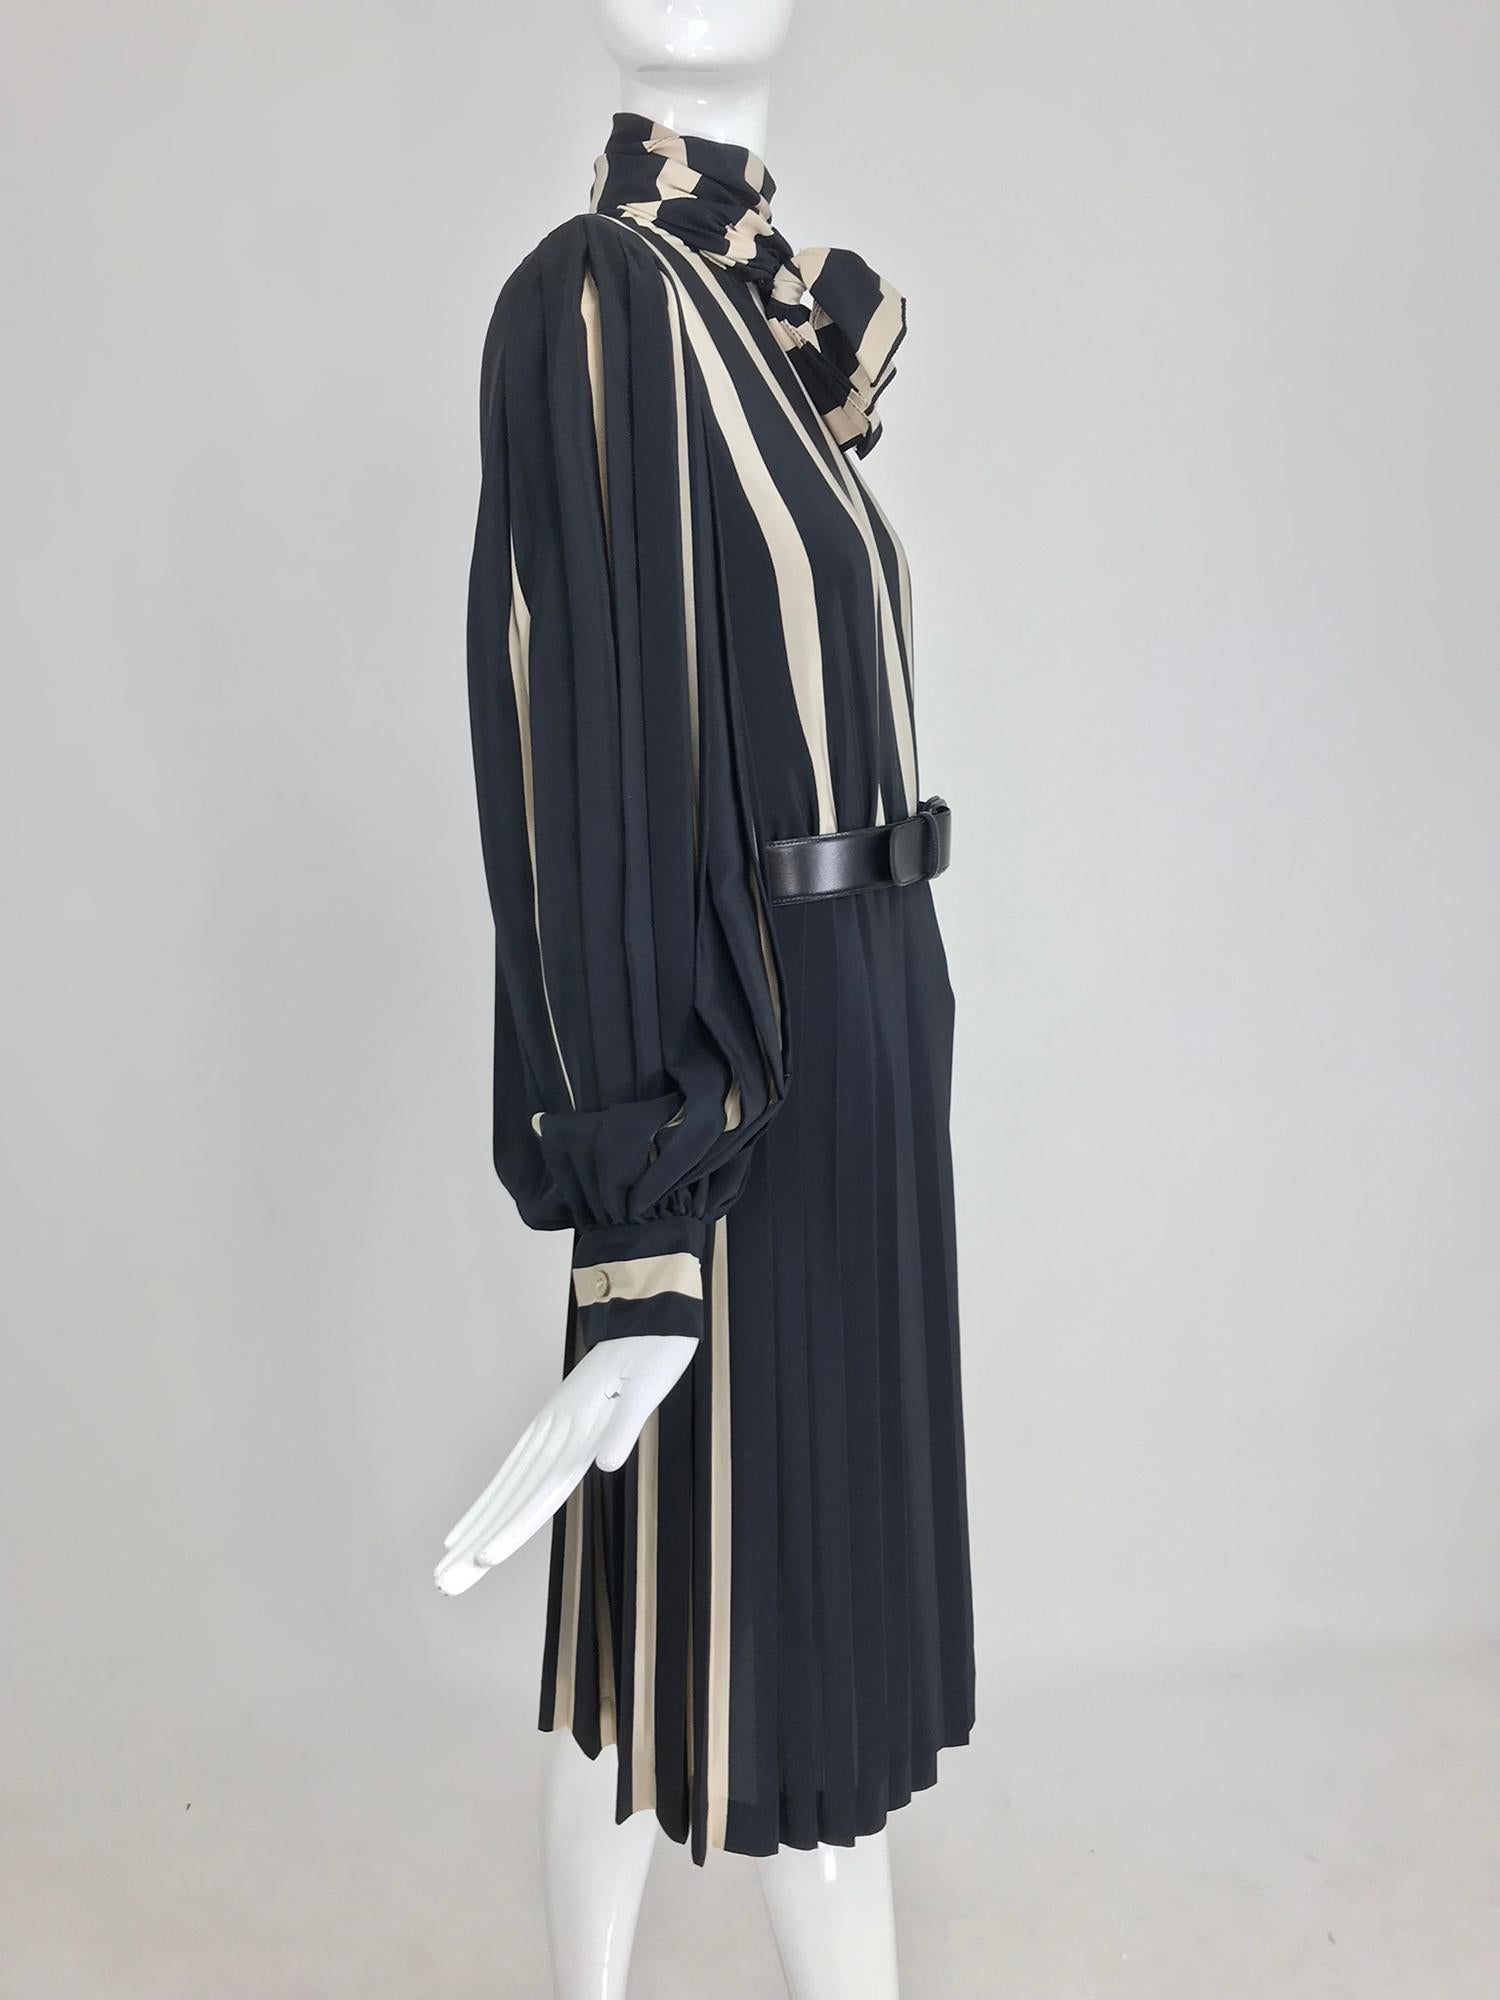 Black Bill Blass pleated silk black and tan stripe dress 1970s